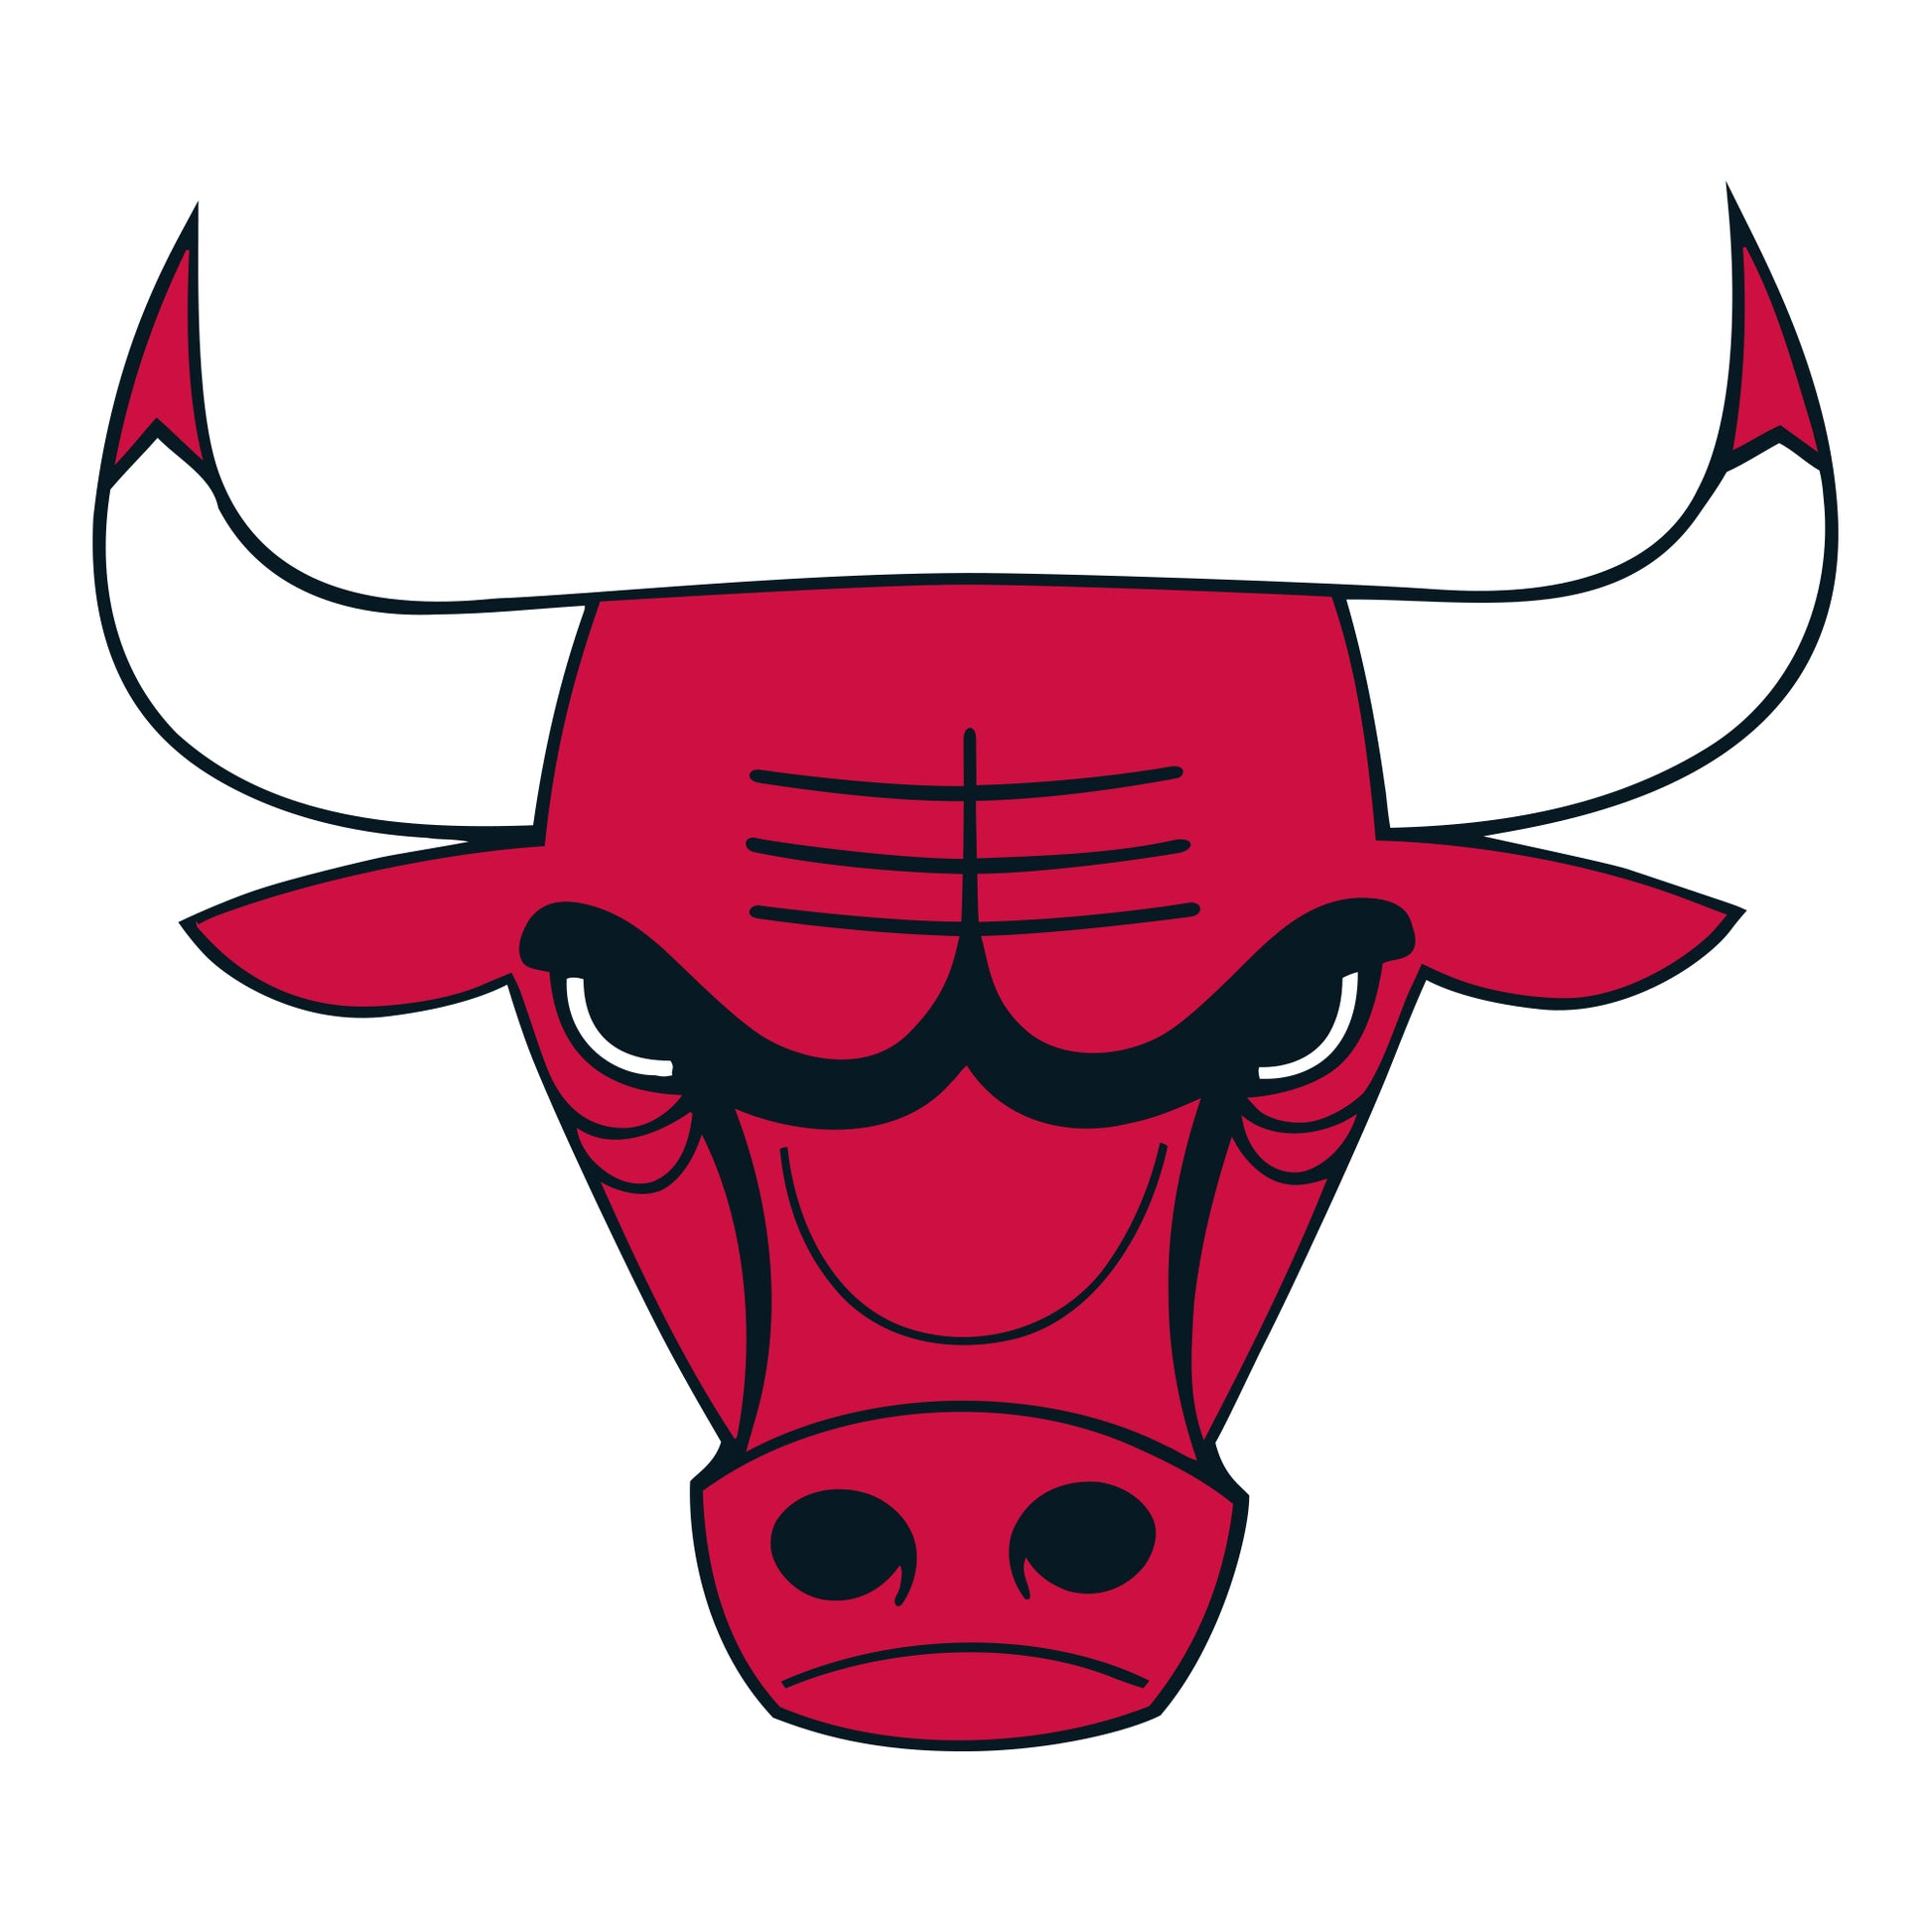 Cheap Chicago Bulls Apparel, Discount Bulls Gear, NBA Bulls Merchandise On  Sale